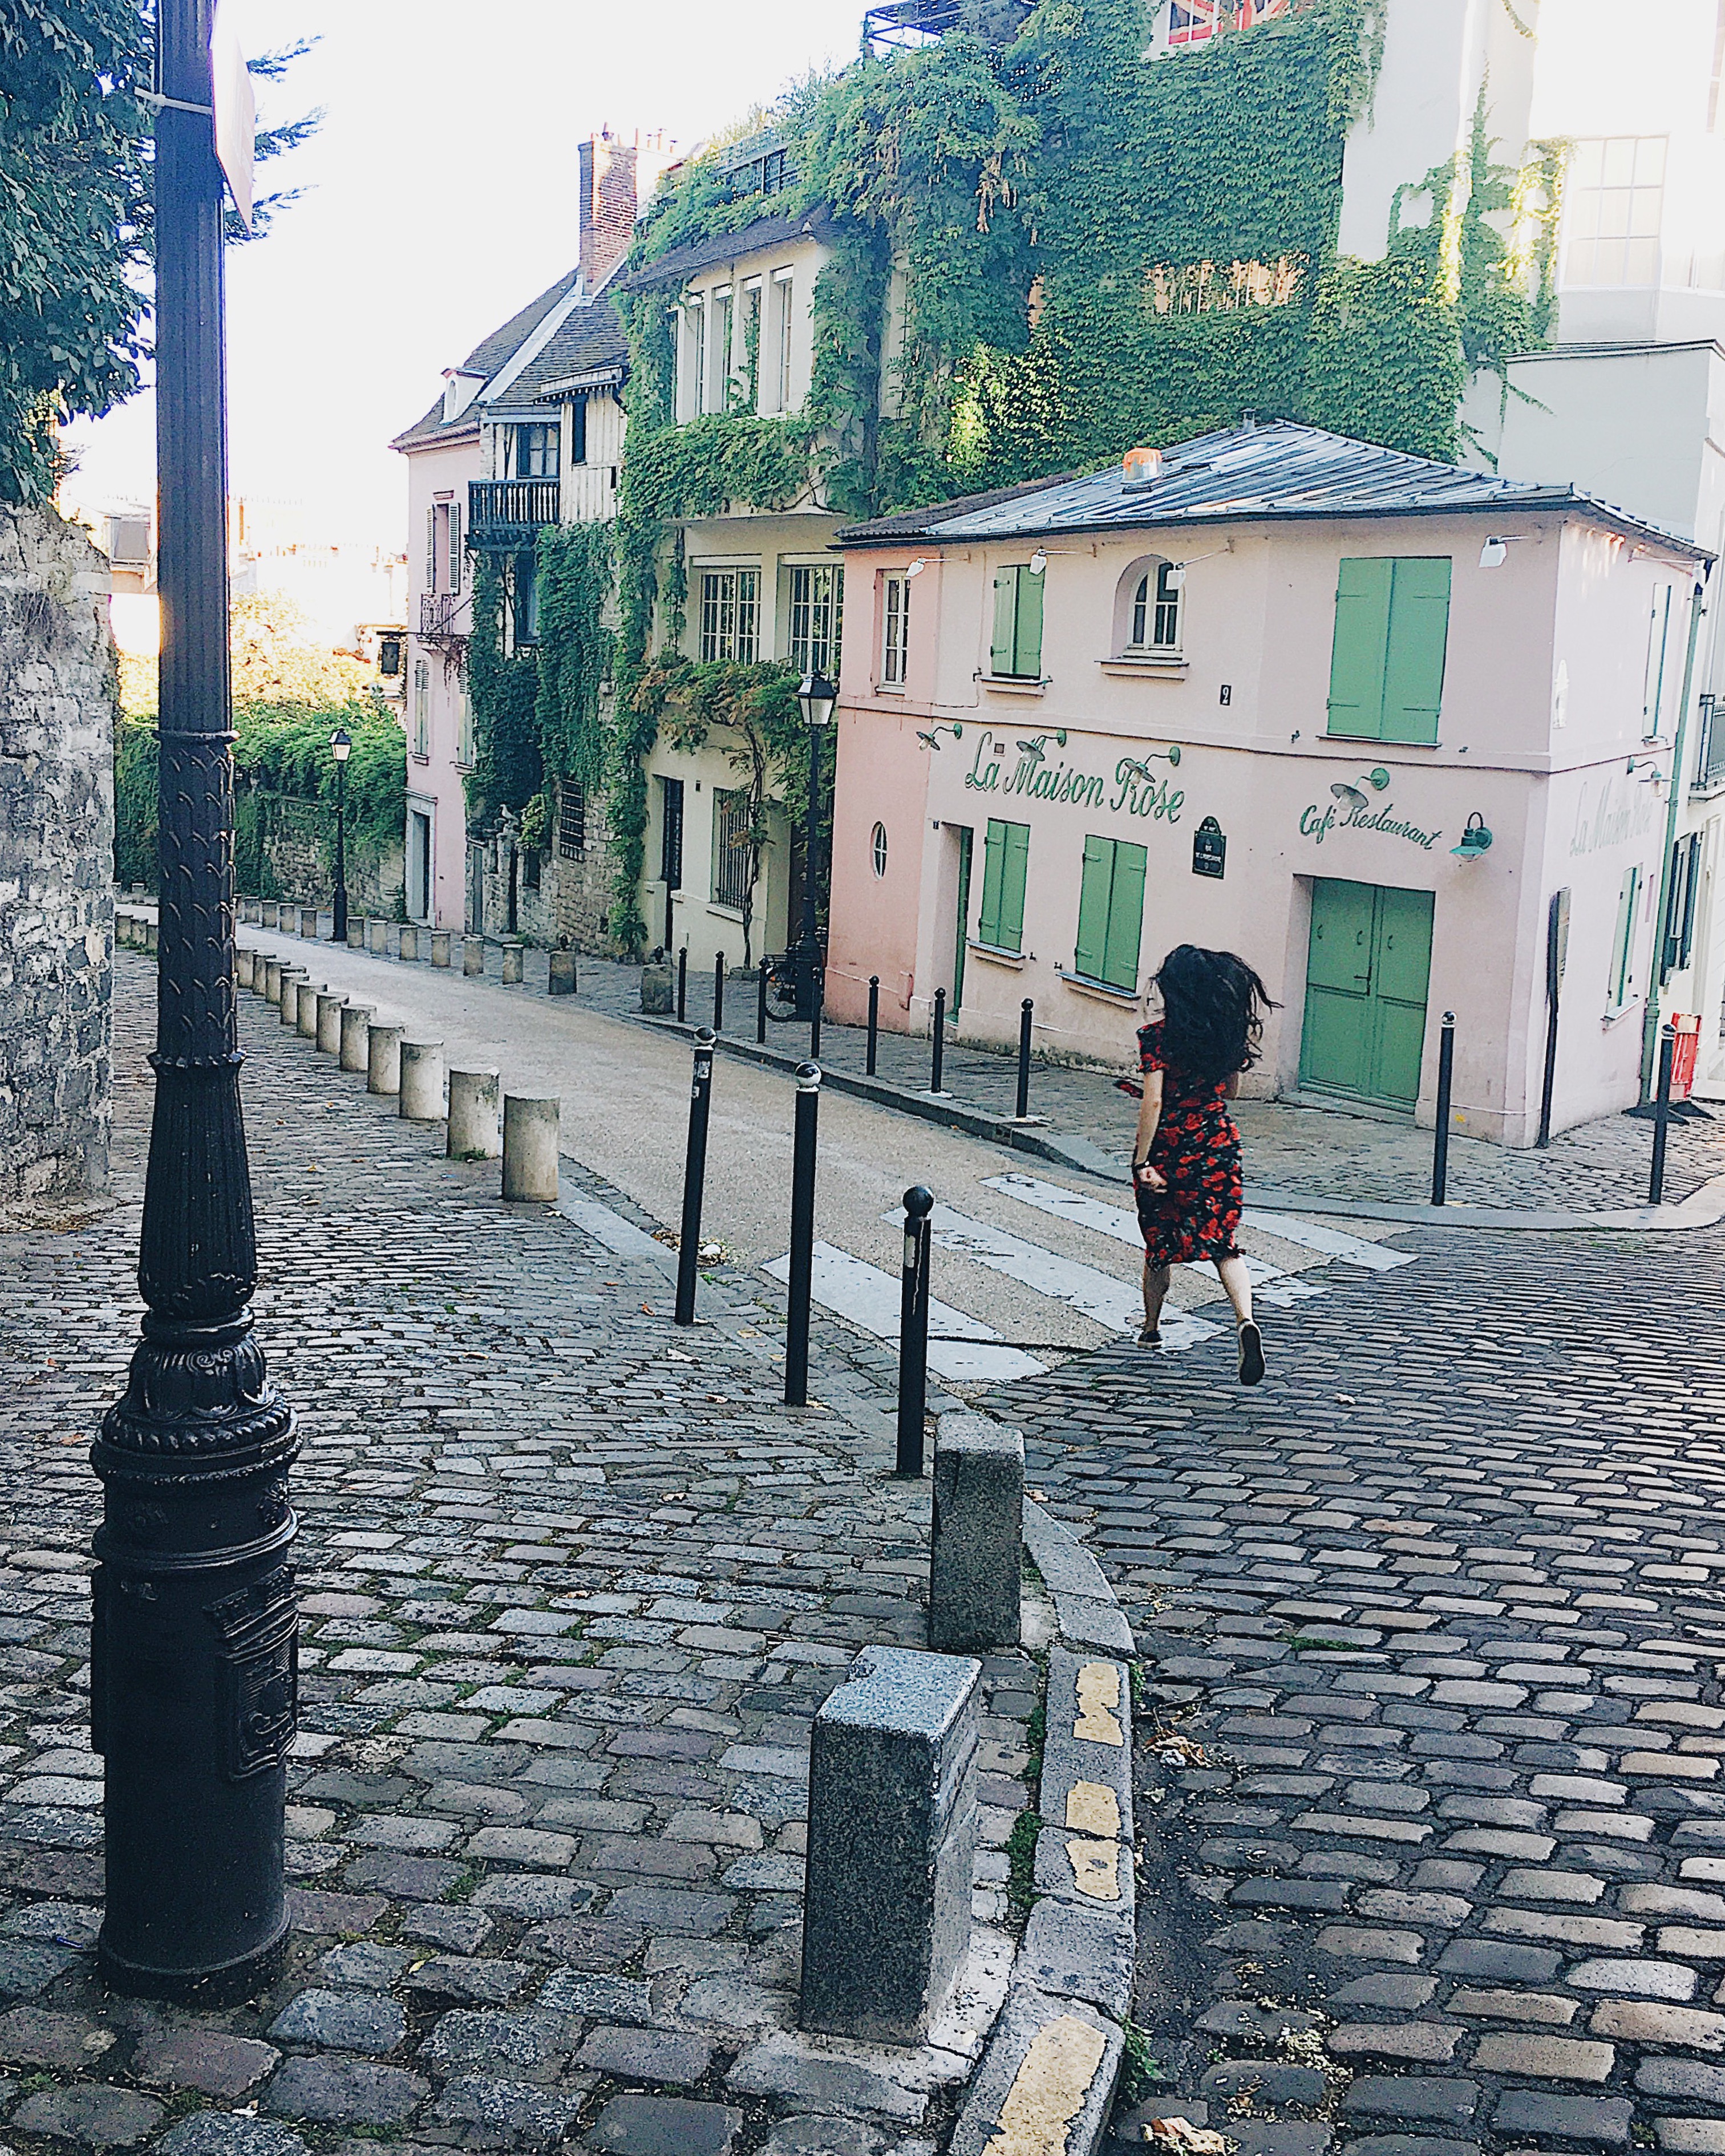 Walking the streets of Montmartre, Paris; La Maison Rose